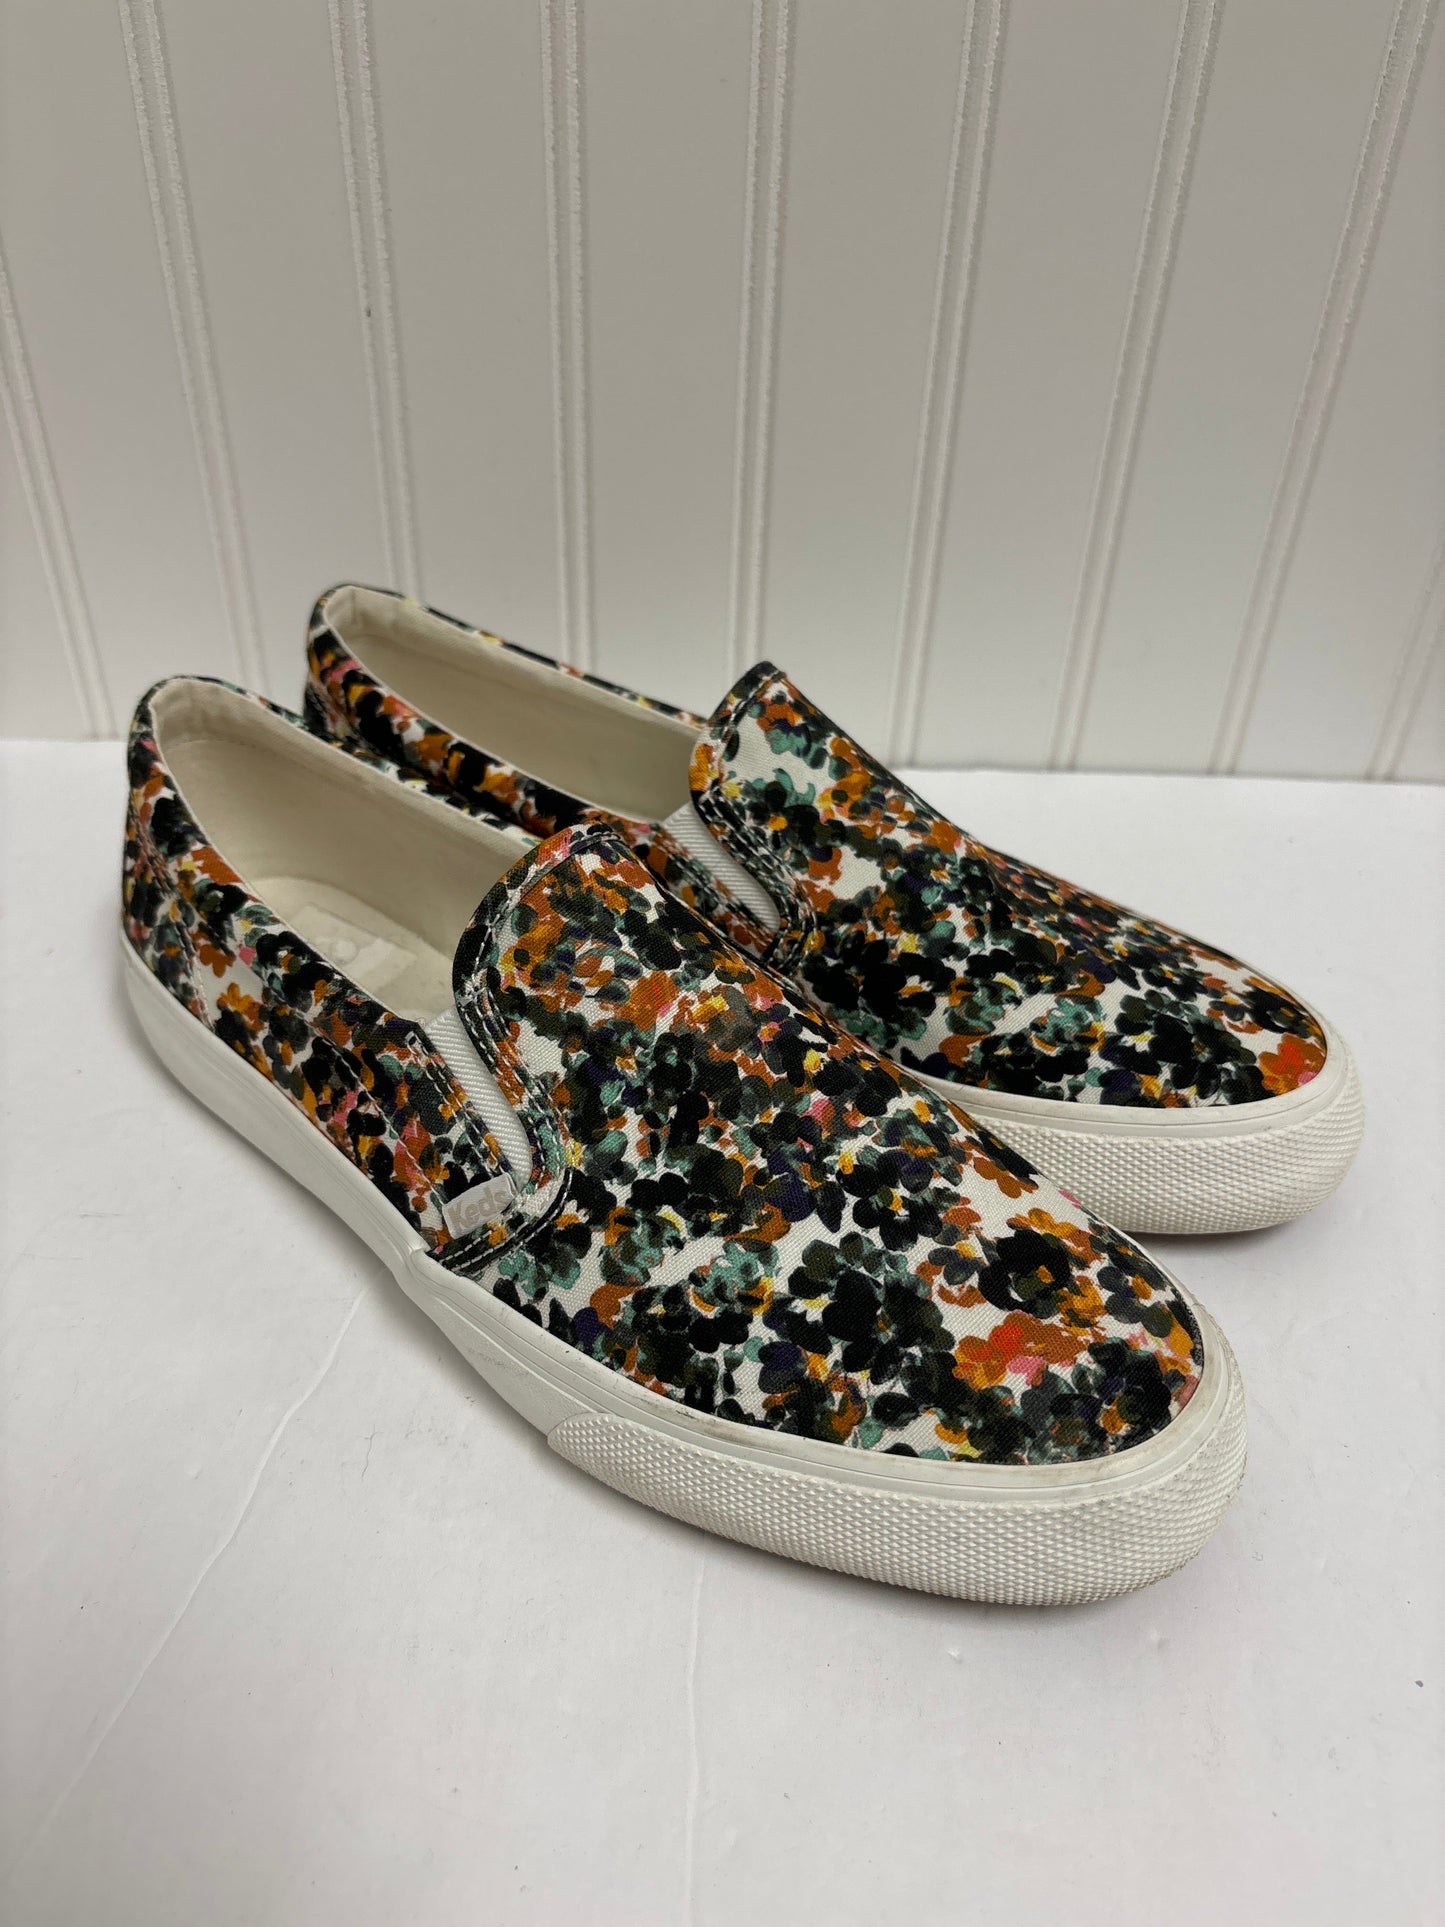 Floral Print Shoes Flats Keds, Size 9.5